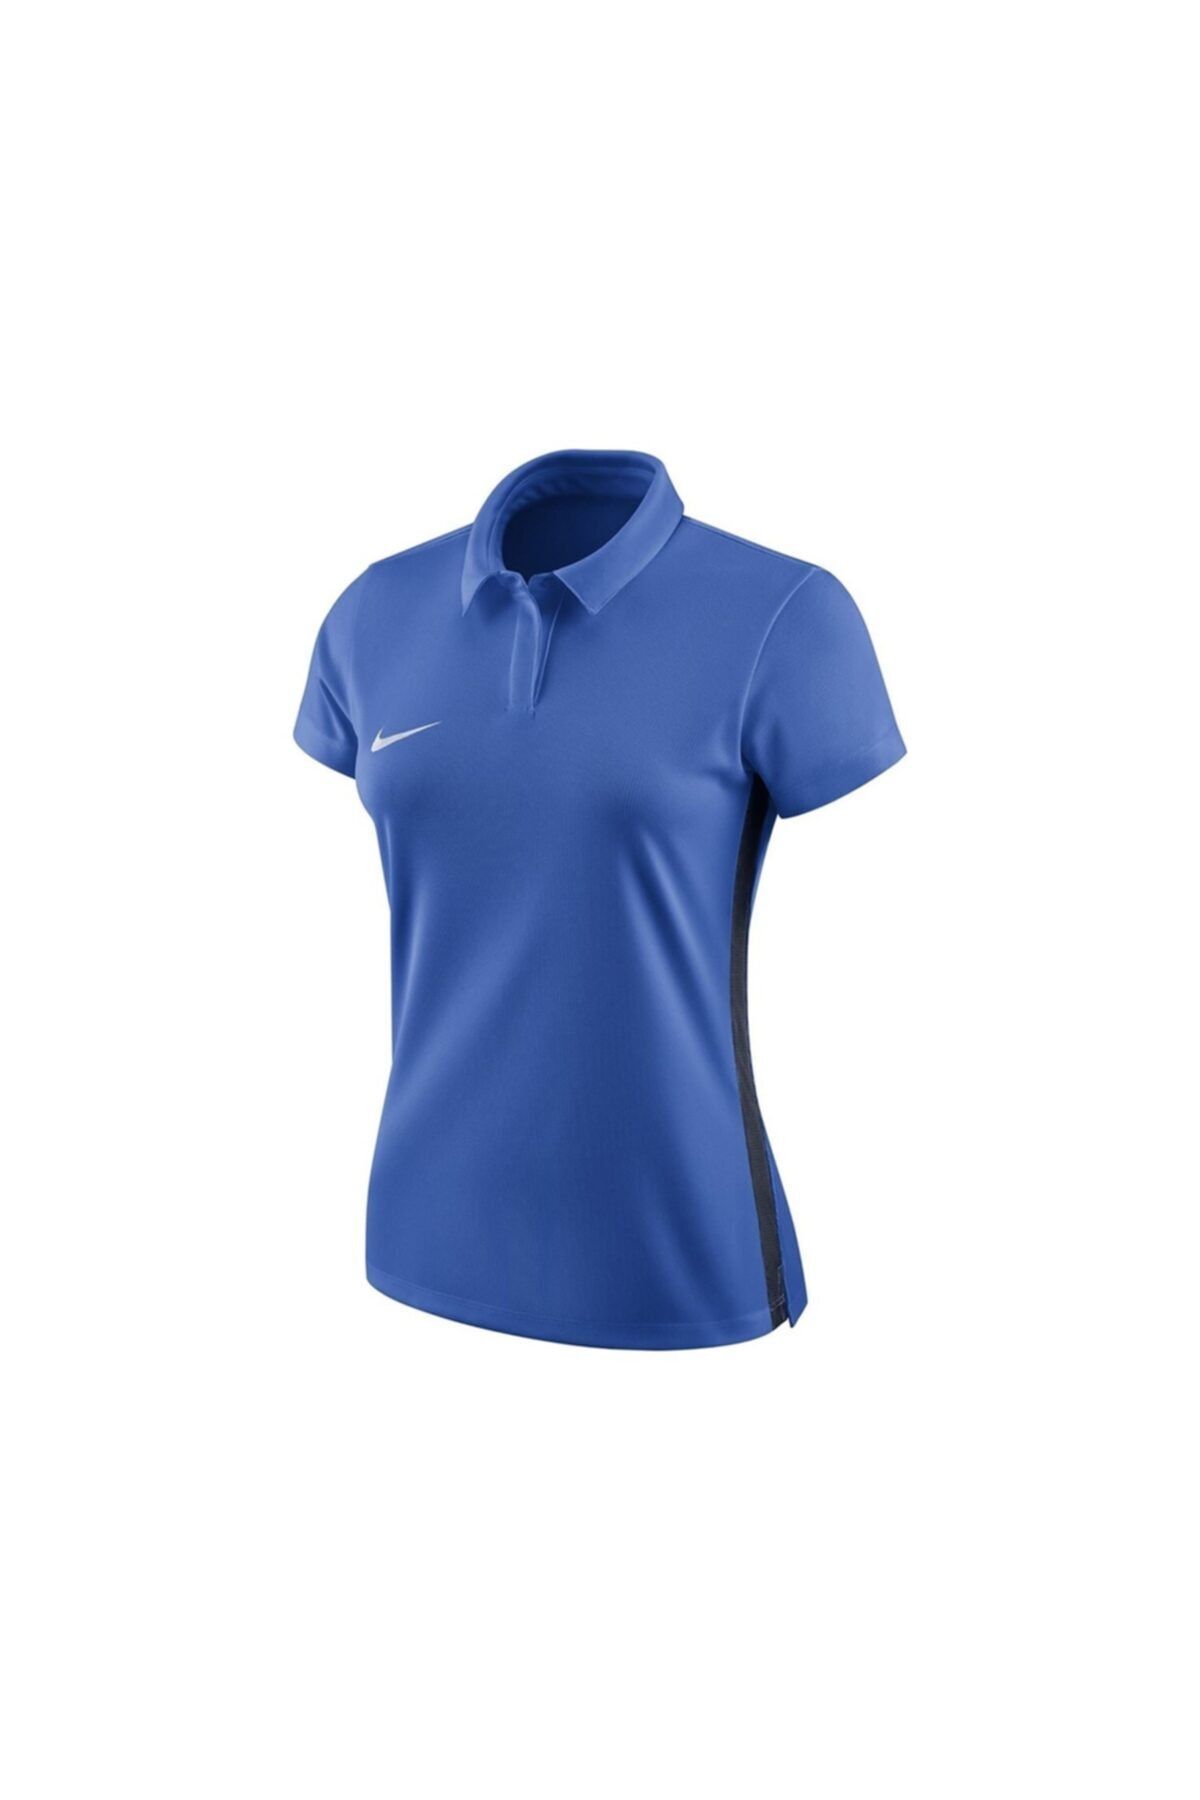 Nike Kadın Mavi Polo Yaka Tişört 899986-463